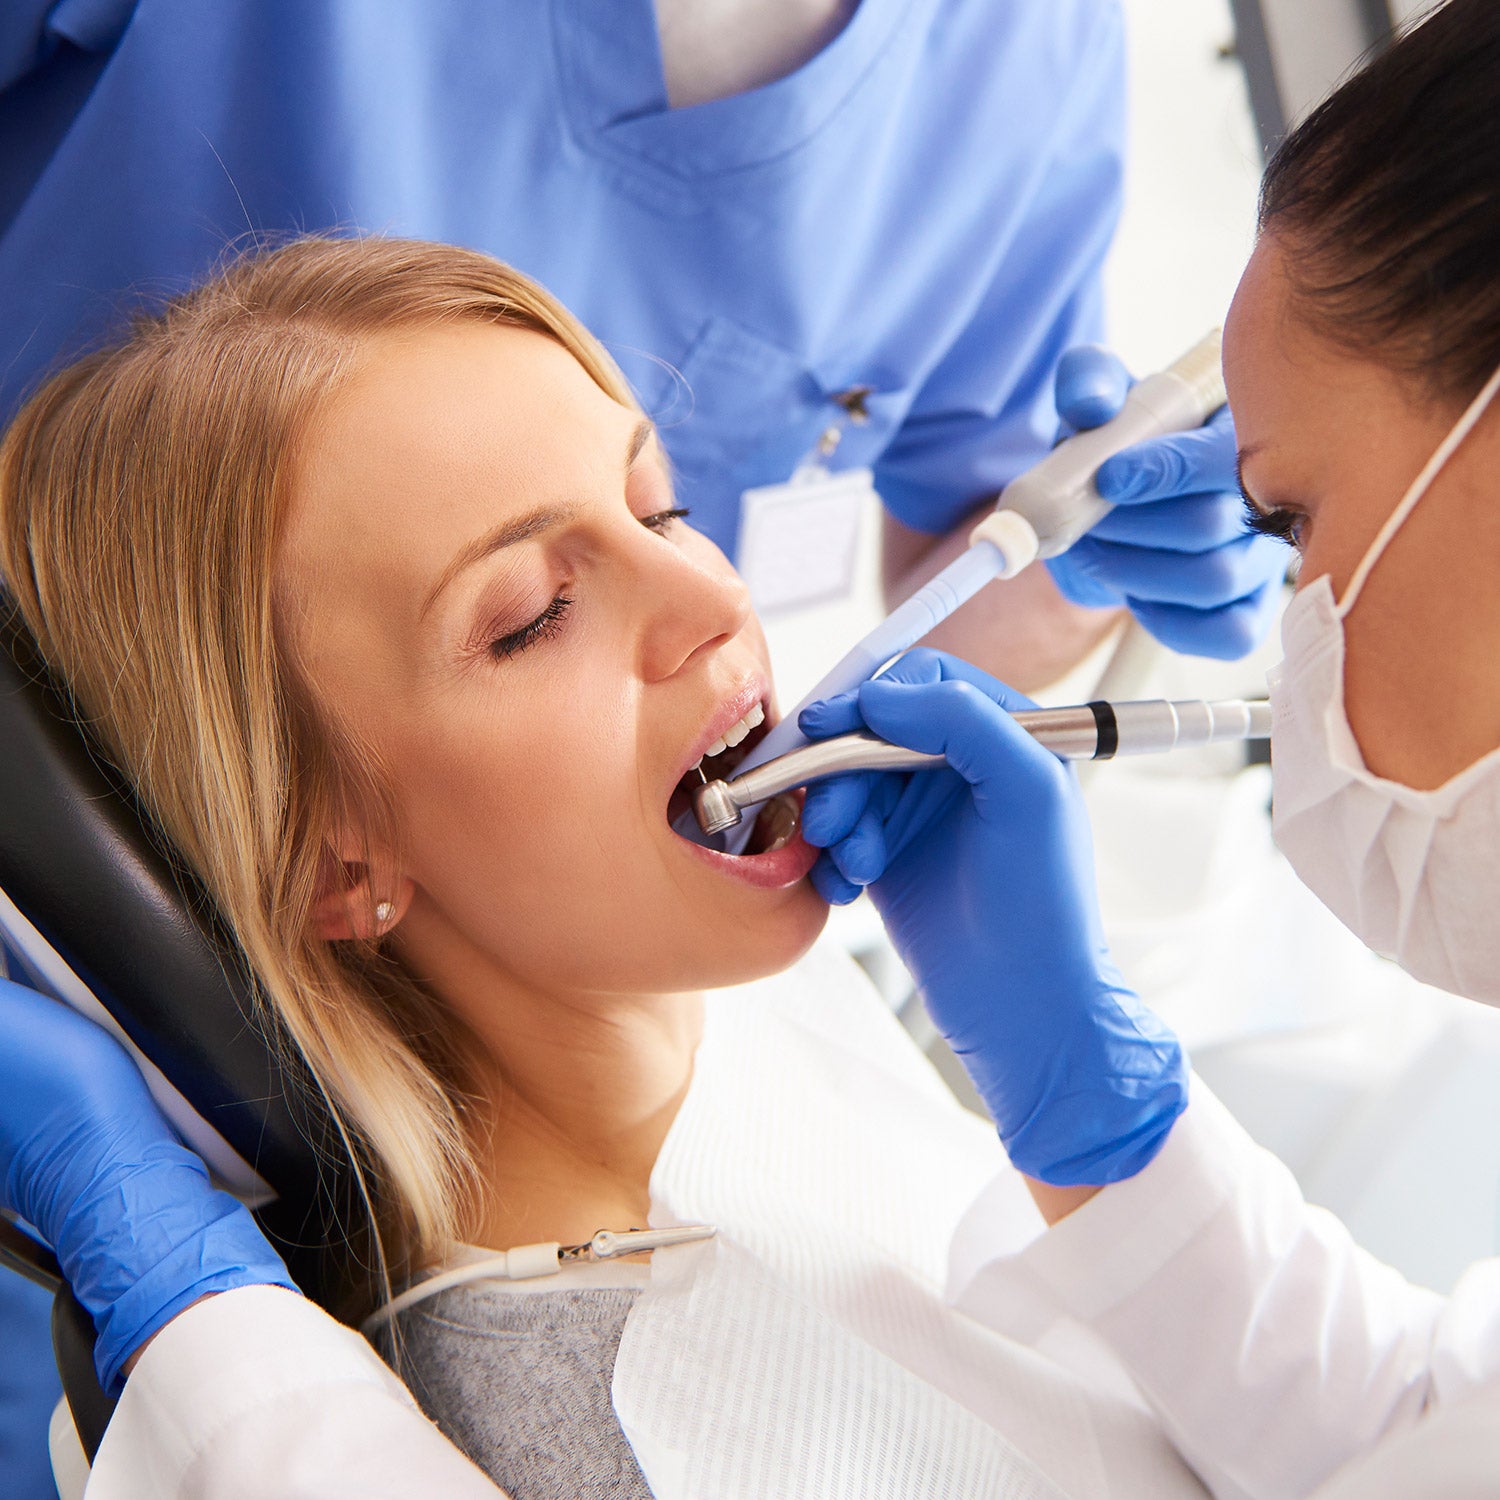 A patient having a dental filling